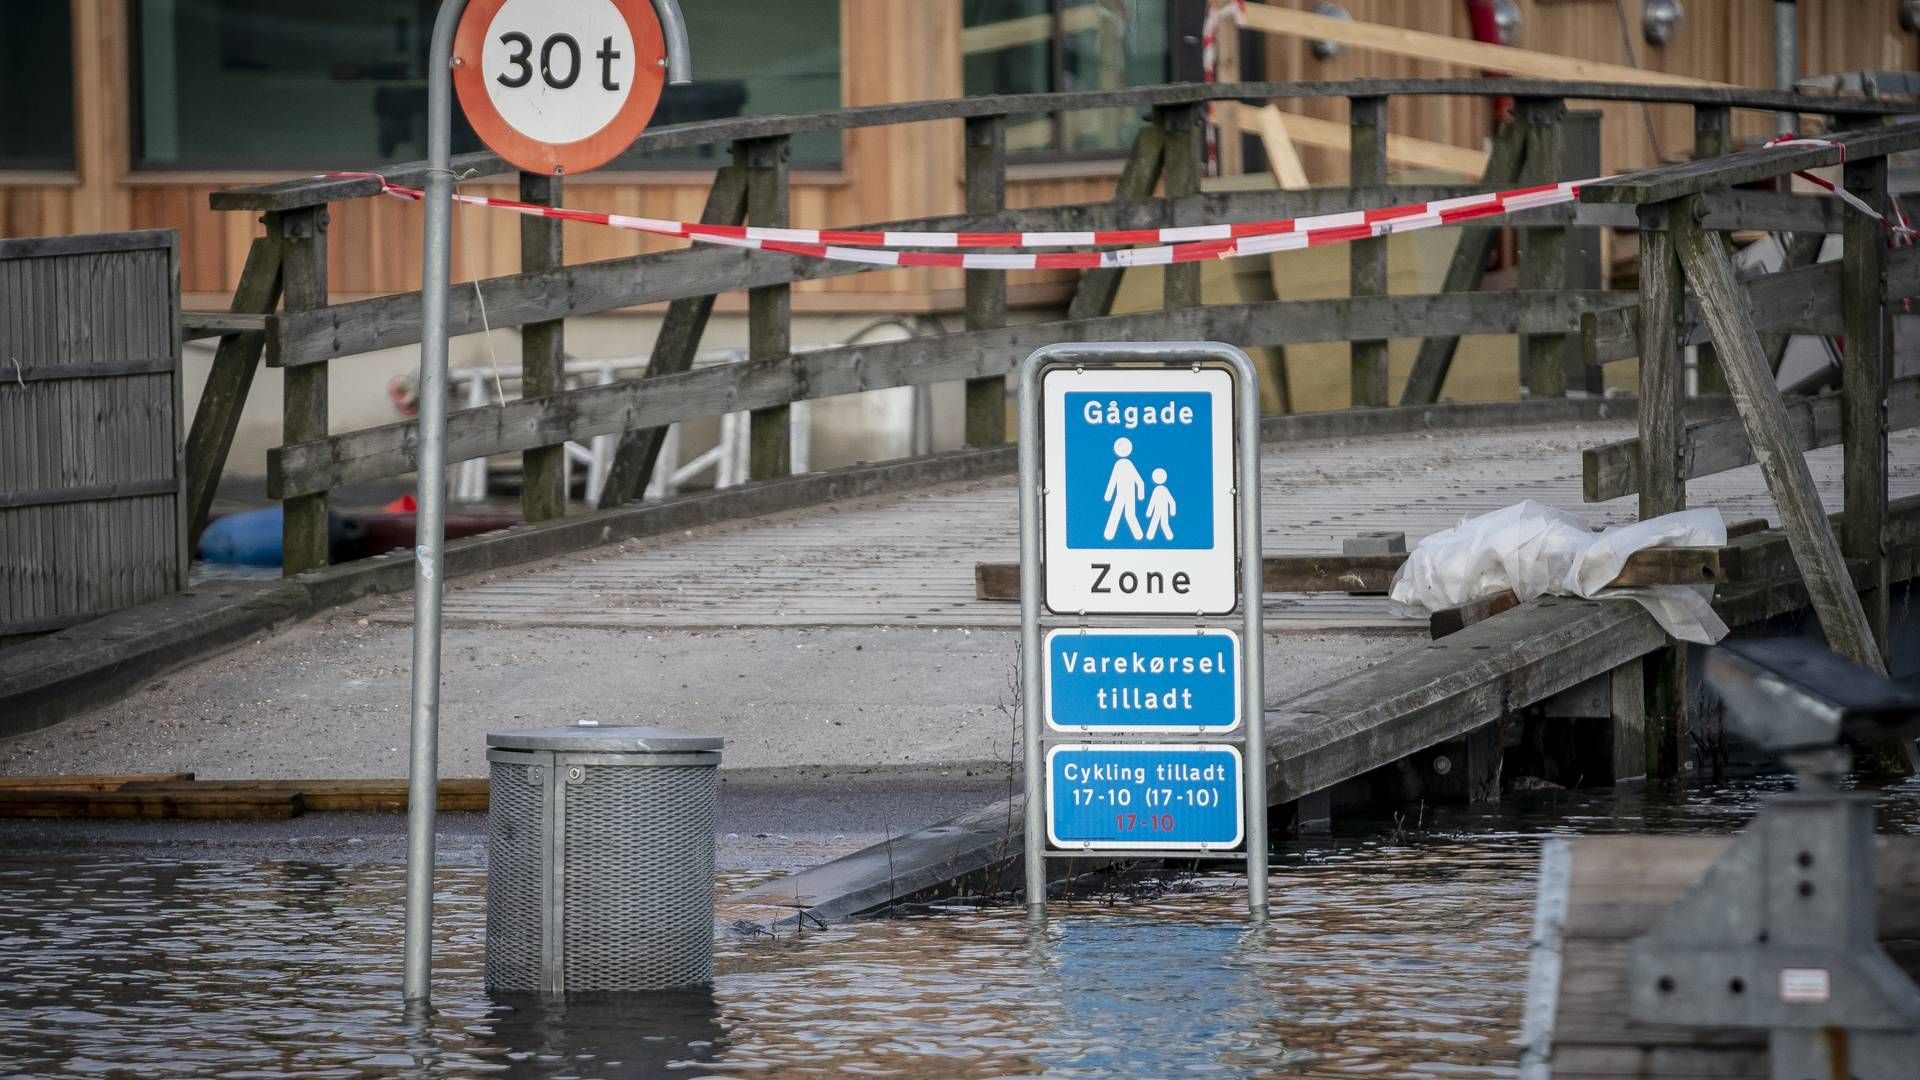 Efter stormen gik blandt andet Roskilde Fjord over sine bredder - her ved roskidle Havn. | Foto: Mads Claus Rasmussen